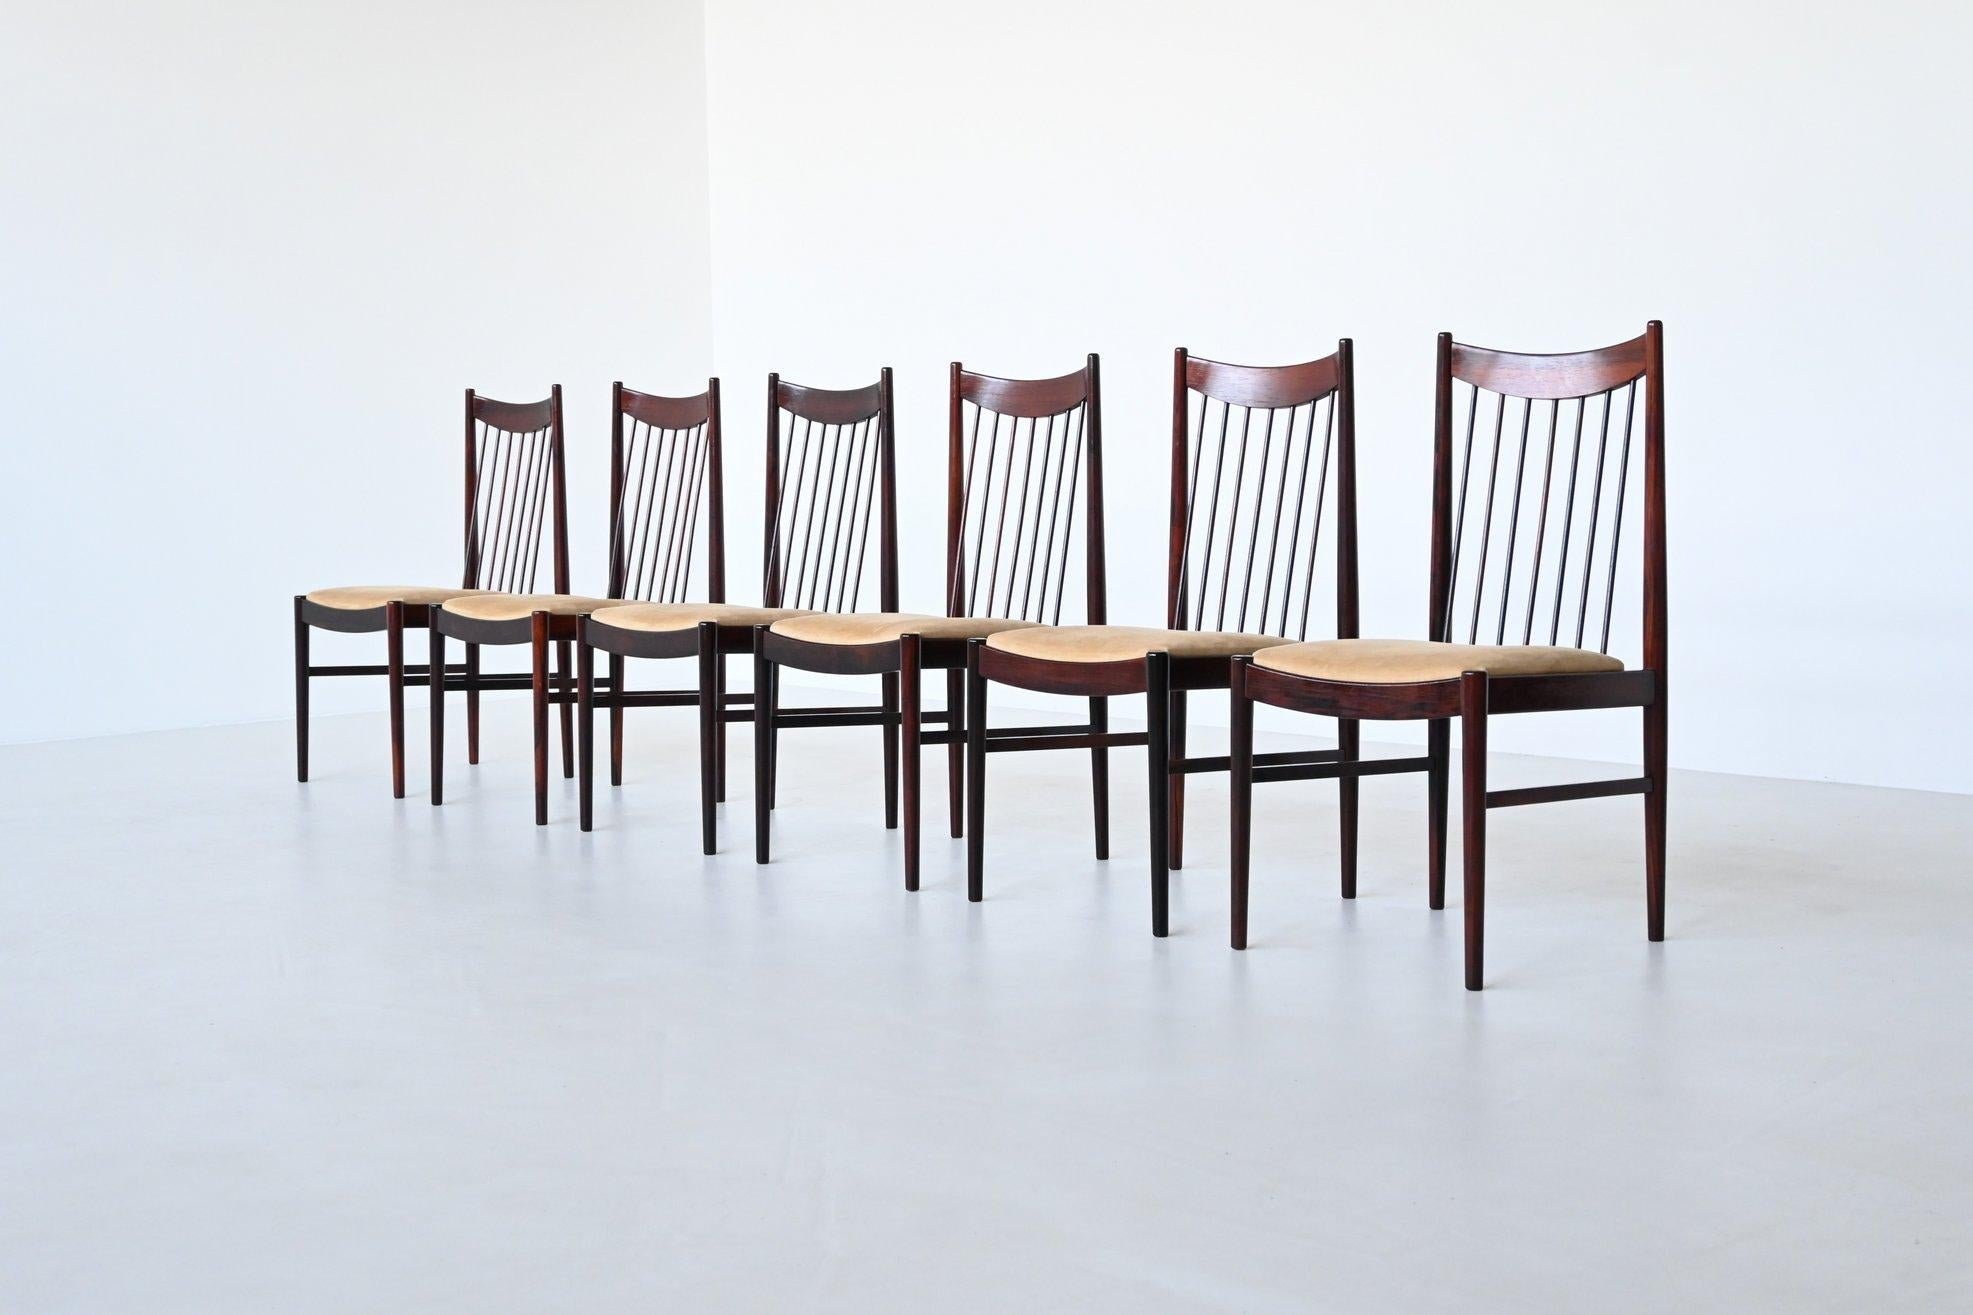 Formschöner Satz von sechs Esszimmerstühlen Modell 422, entworfen von Helge Sibast für Sibast Mobler, Dänemark 1960. Diese gut verarbeiteten Stühle sind aus massivem Palisanderholz gefertigt und die Sitze sind mit beigem Wildlederstoff gepolstert.